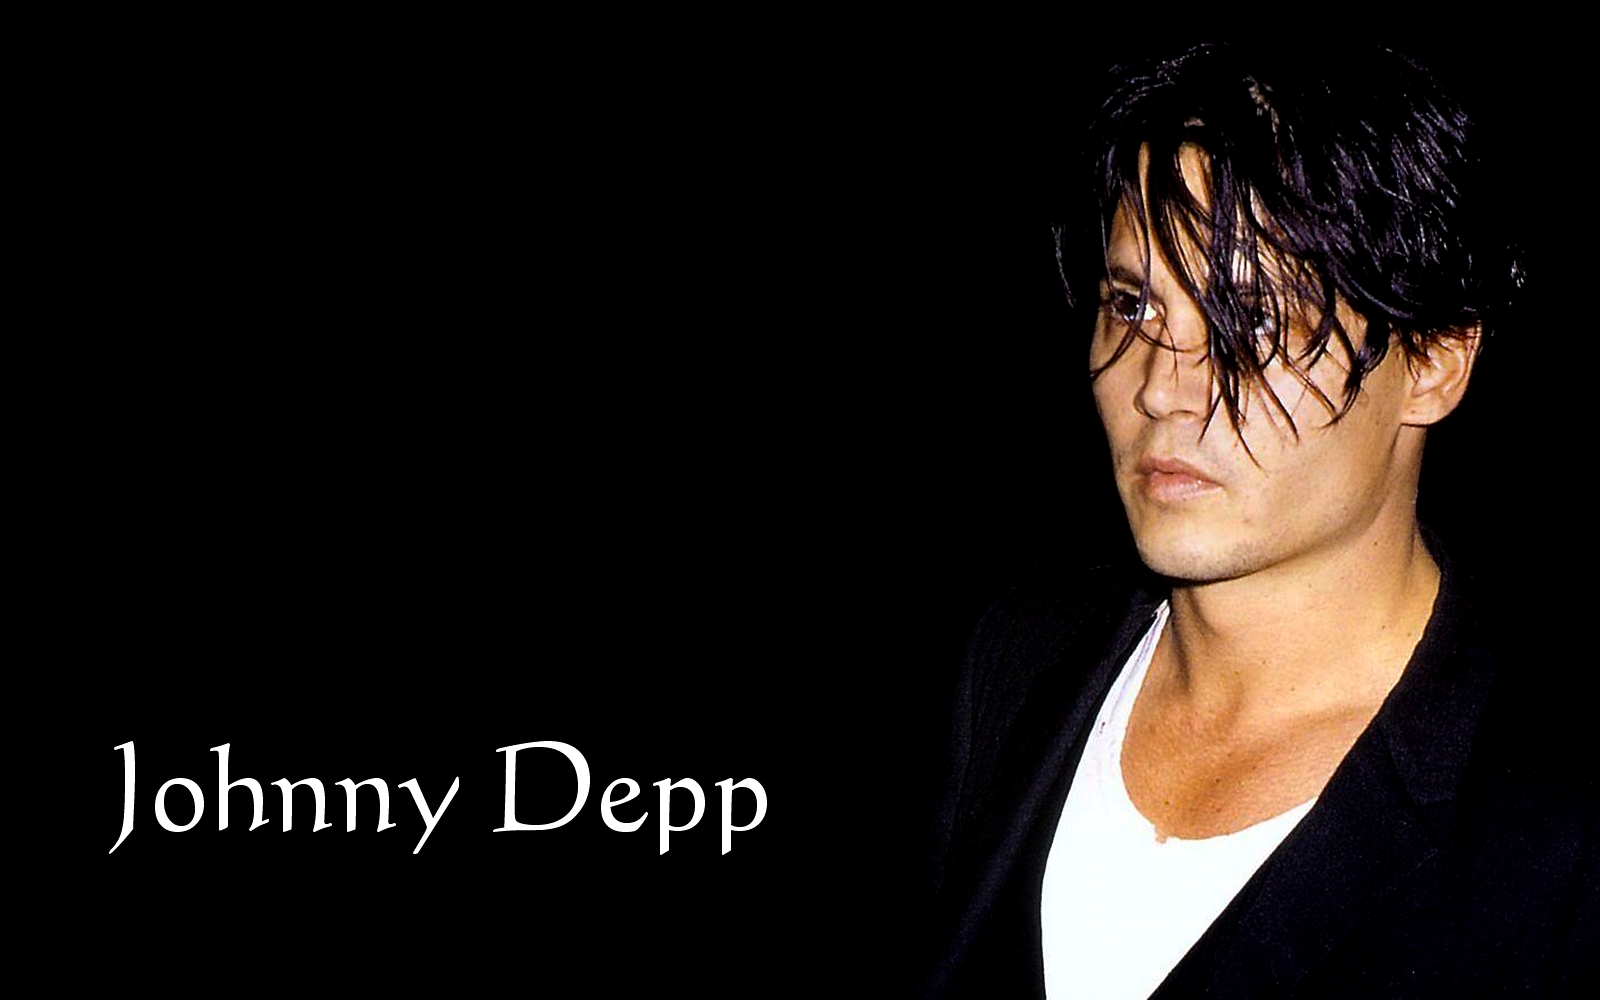 Filmovízia: Johnny Depp Wallpaper.